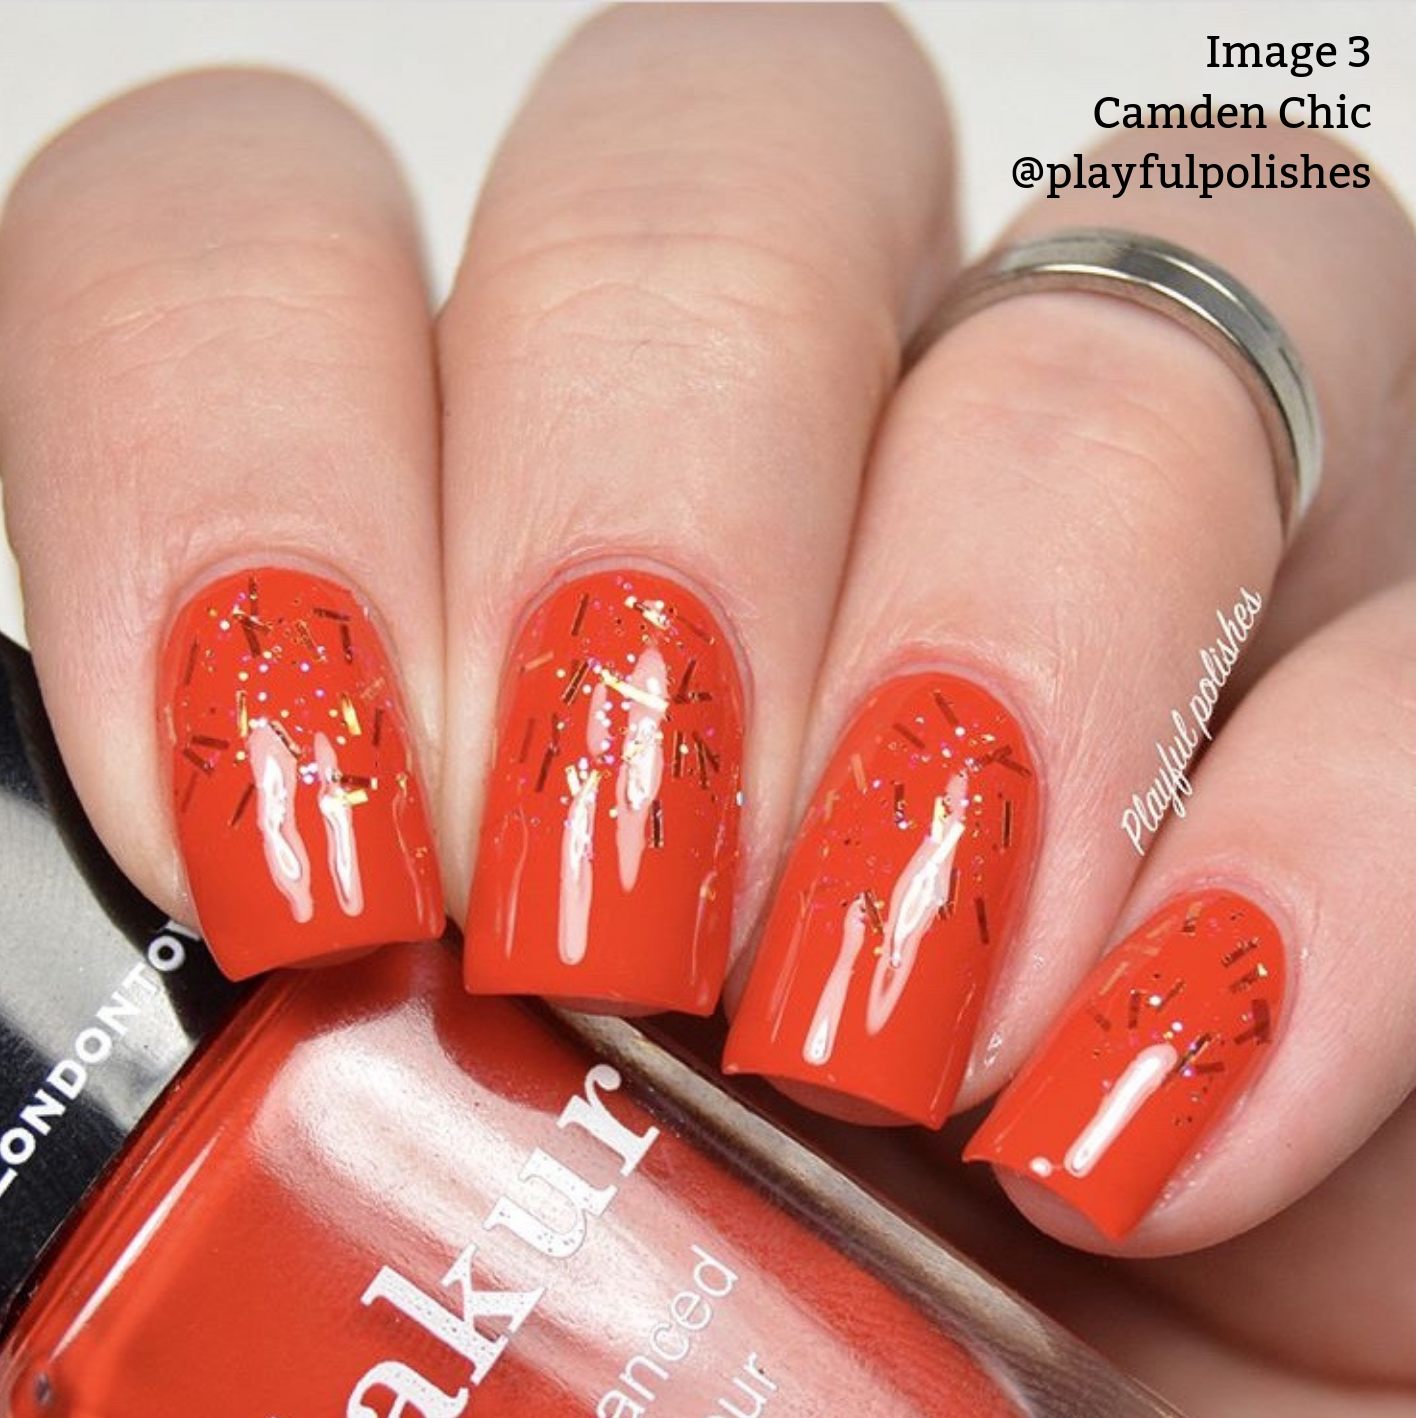 Camden Chic Nail Color | Gel-Like Nail Polish